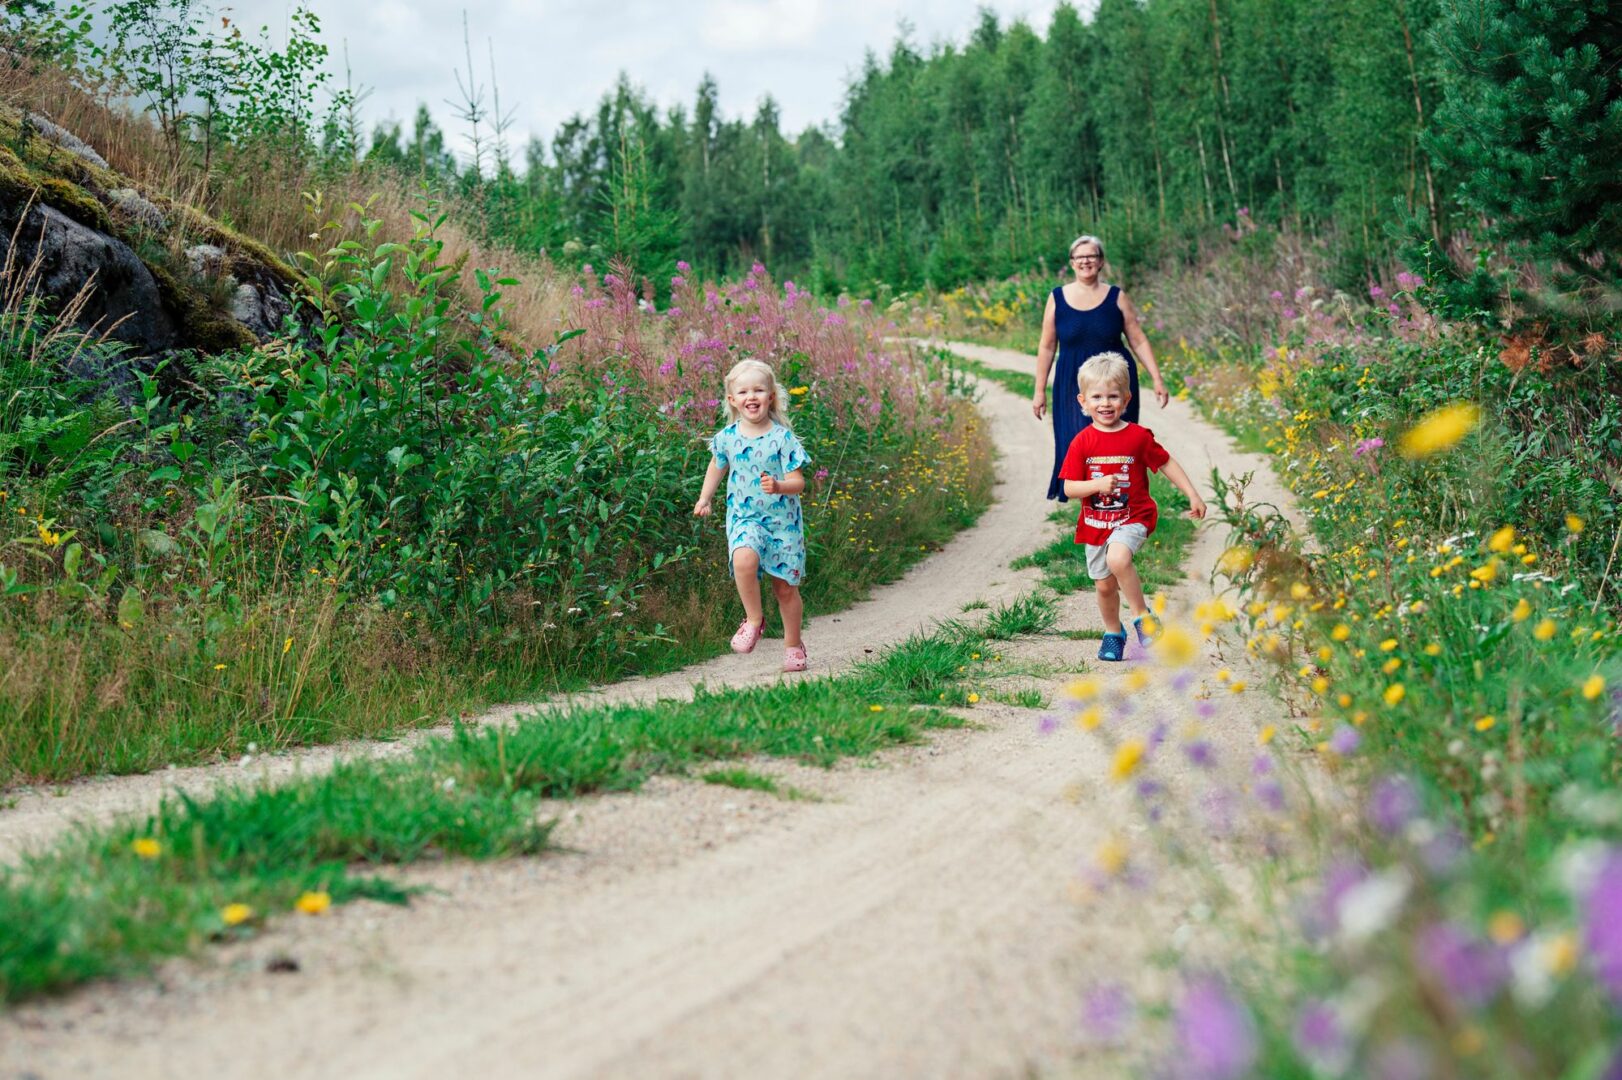 Mummolan tunnelmallisella mökkitiellä kelpaa Alinan ja Jimin kirmata. Mummi Annukka Toivola seuraa mukana. © Pihla Liukkonen